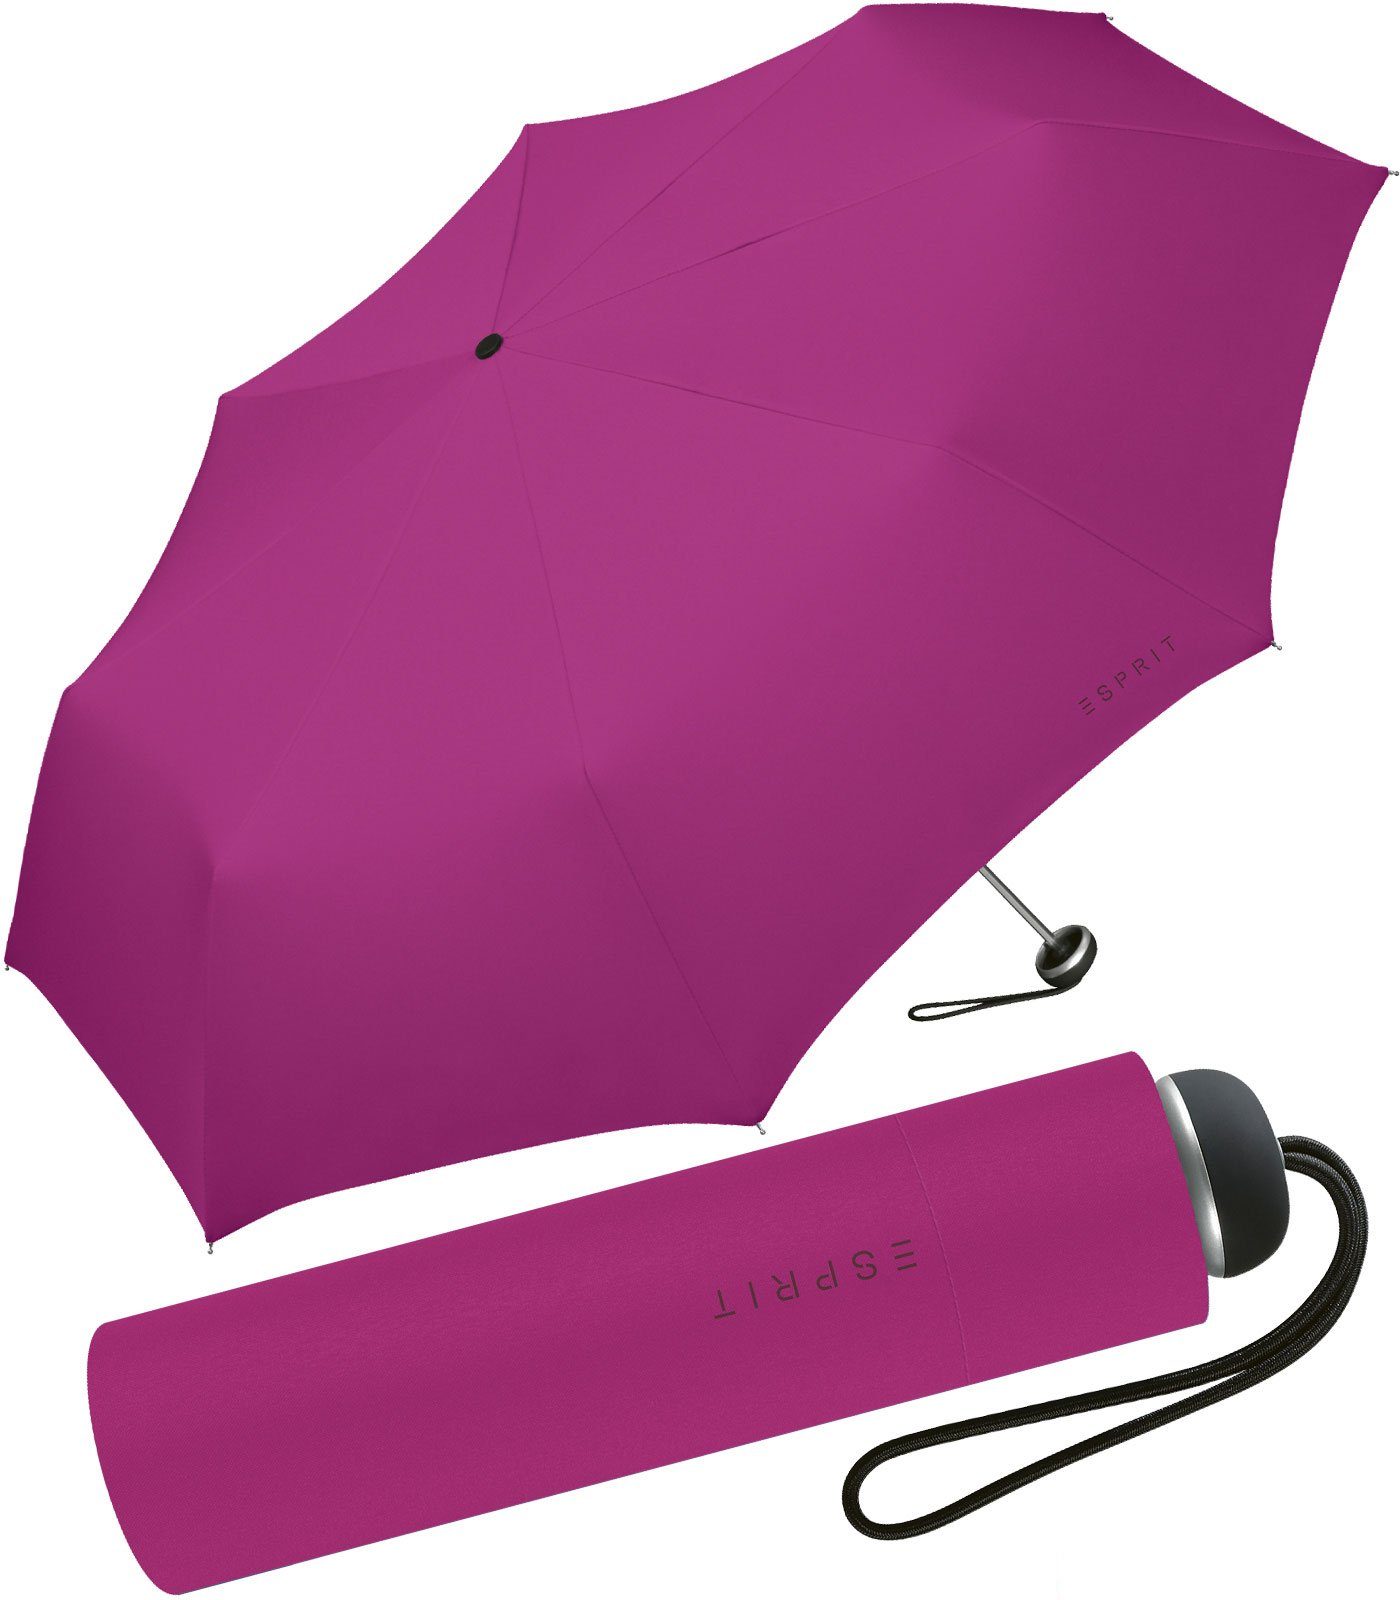 Esprit Taschenregenschirm leichter, handlicher Schirm für Damen, Begleiter in modischen Farben - festive fuchsia pink